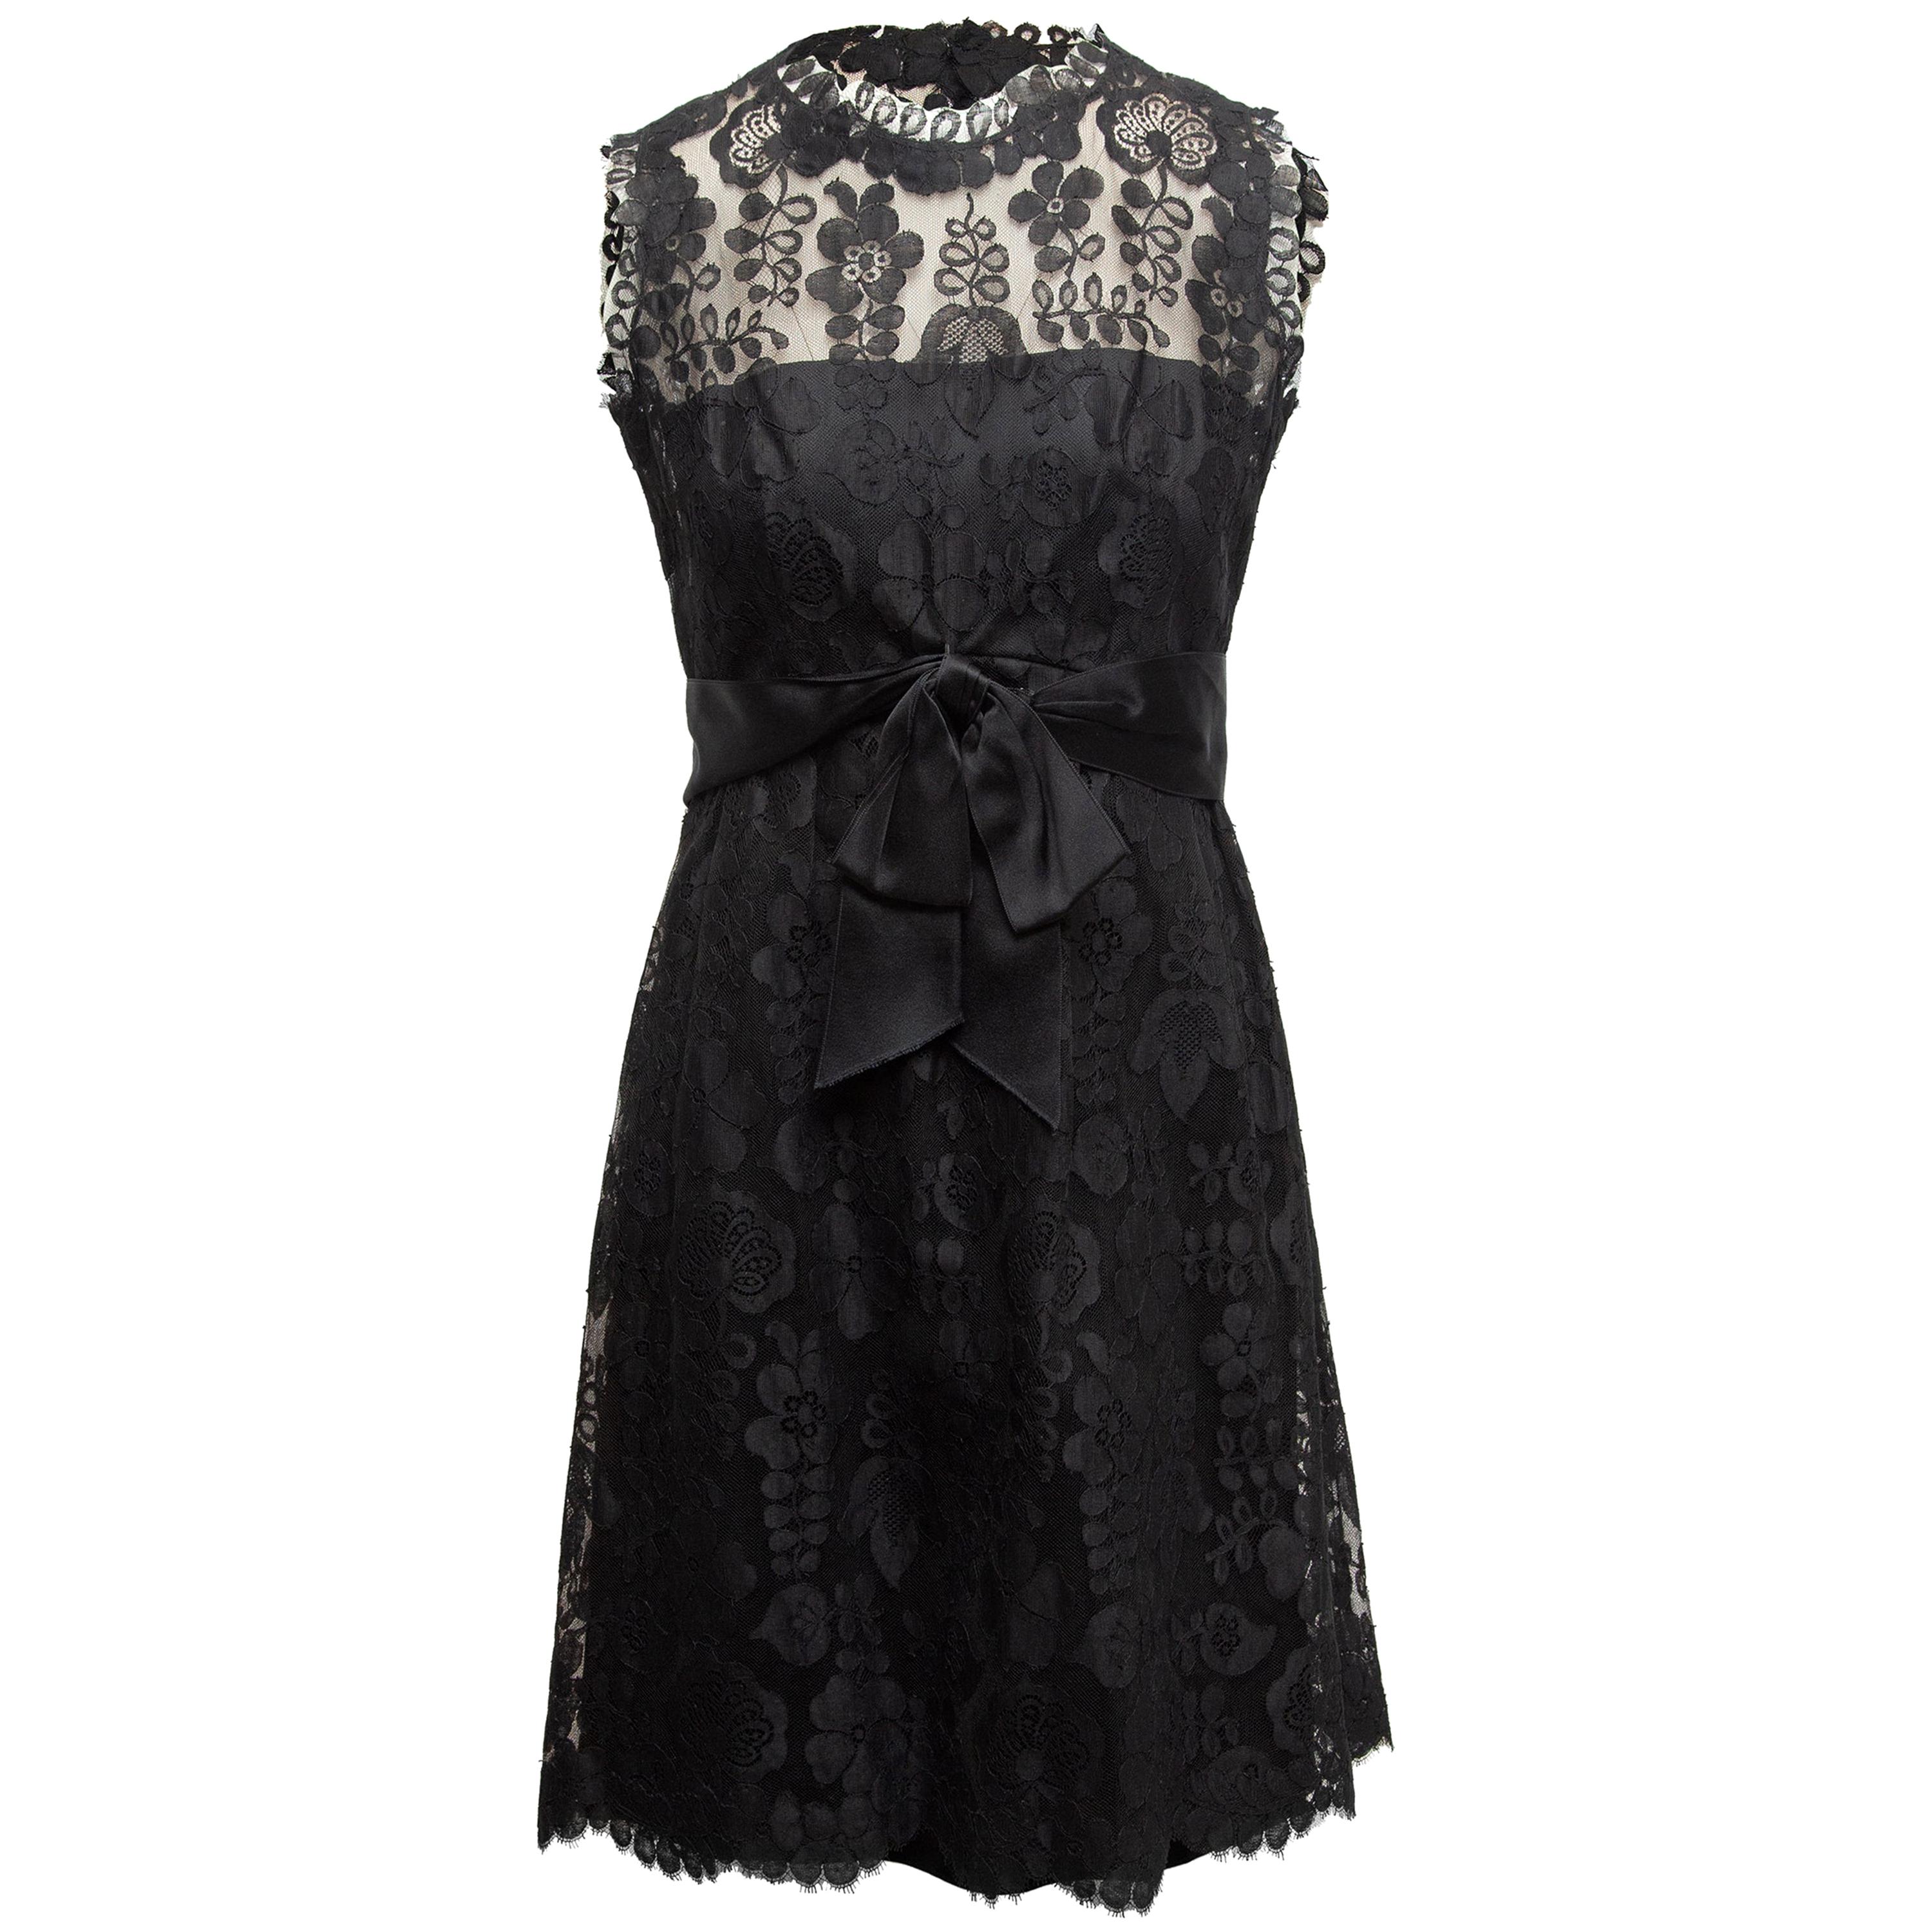 Adele Simpson Black Lace Sleeveless Dress